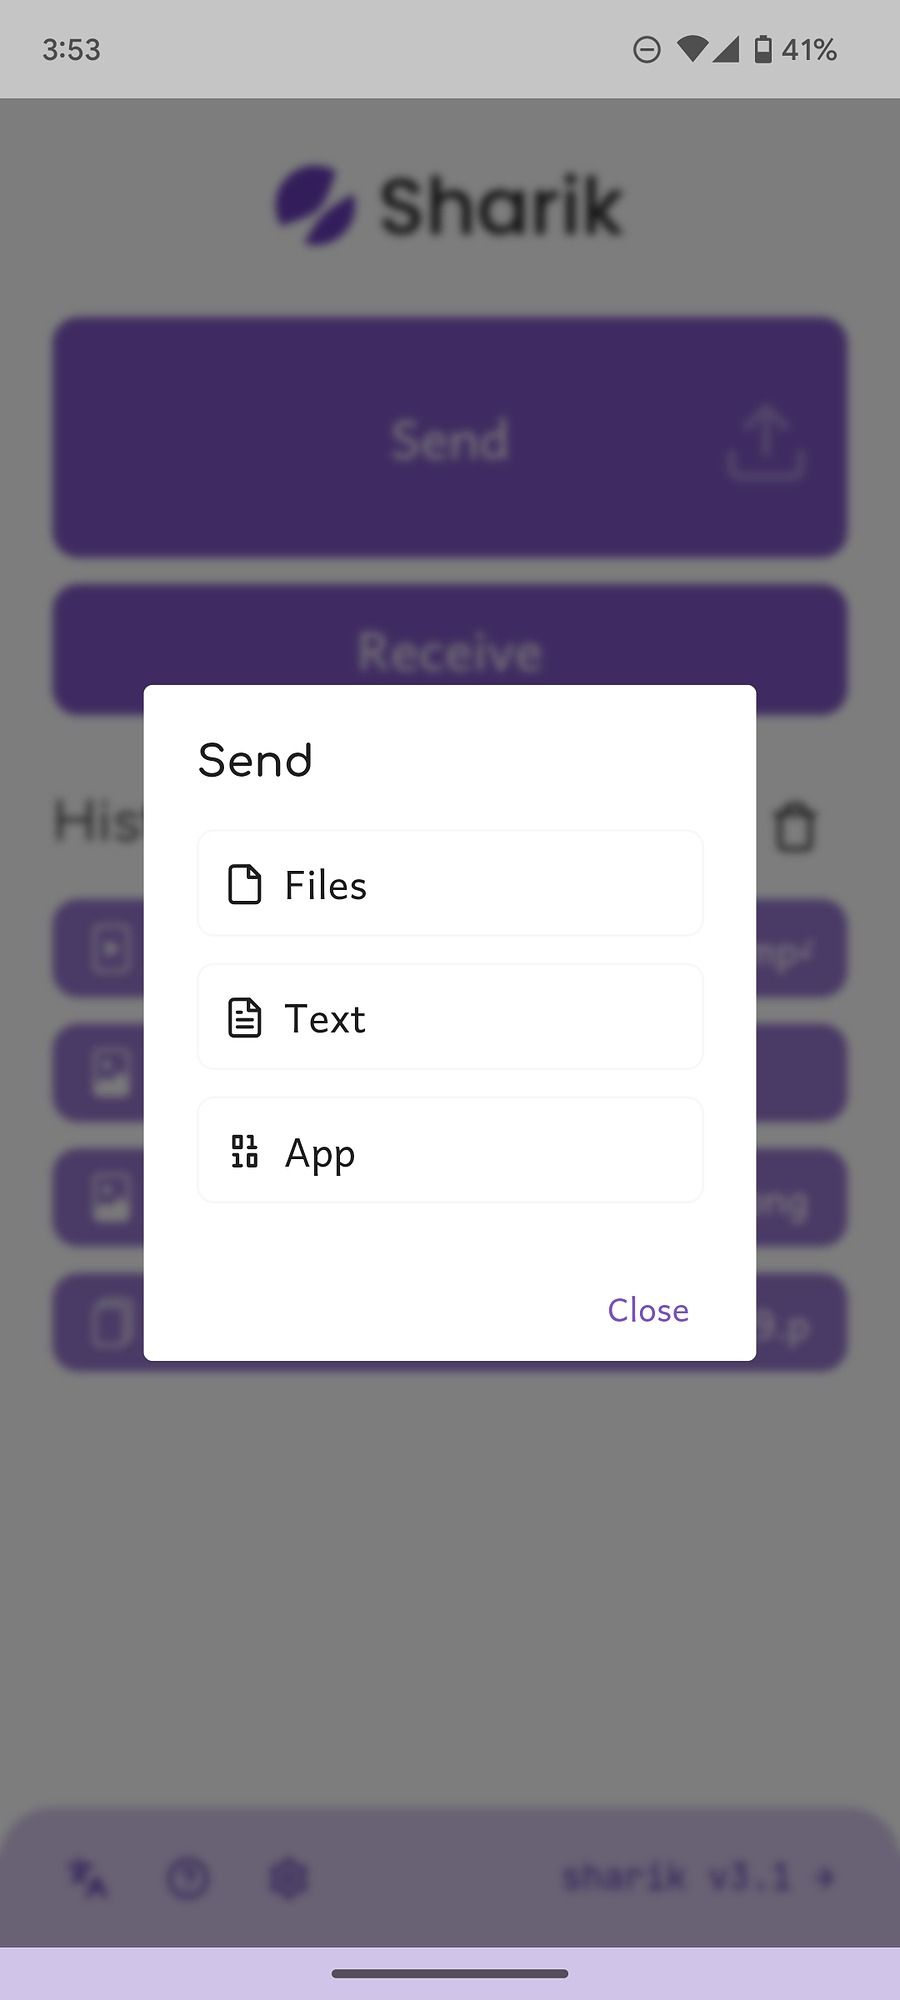 Send files or text via Shareik